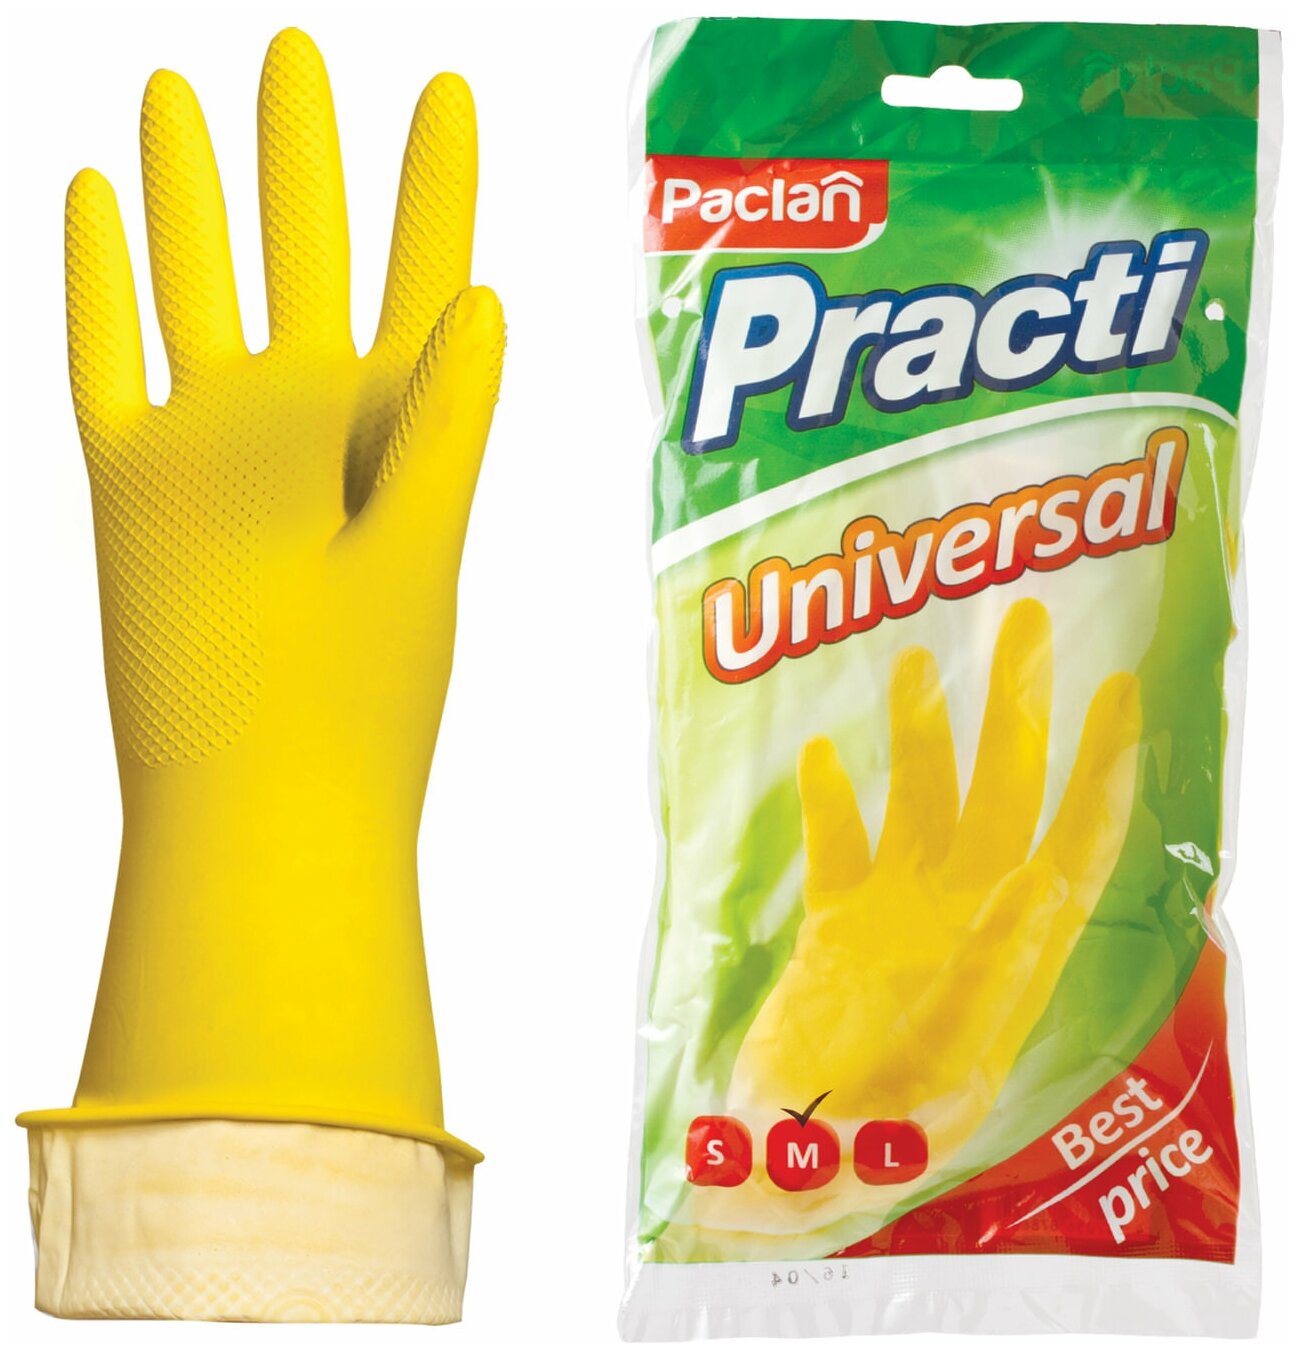 Перчатки хозяйственные латексные, х/б напыление, разм M (средний), желтые, PACLAN "Practi Universal" В комплекте: 10шт.